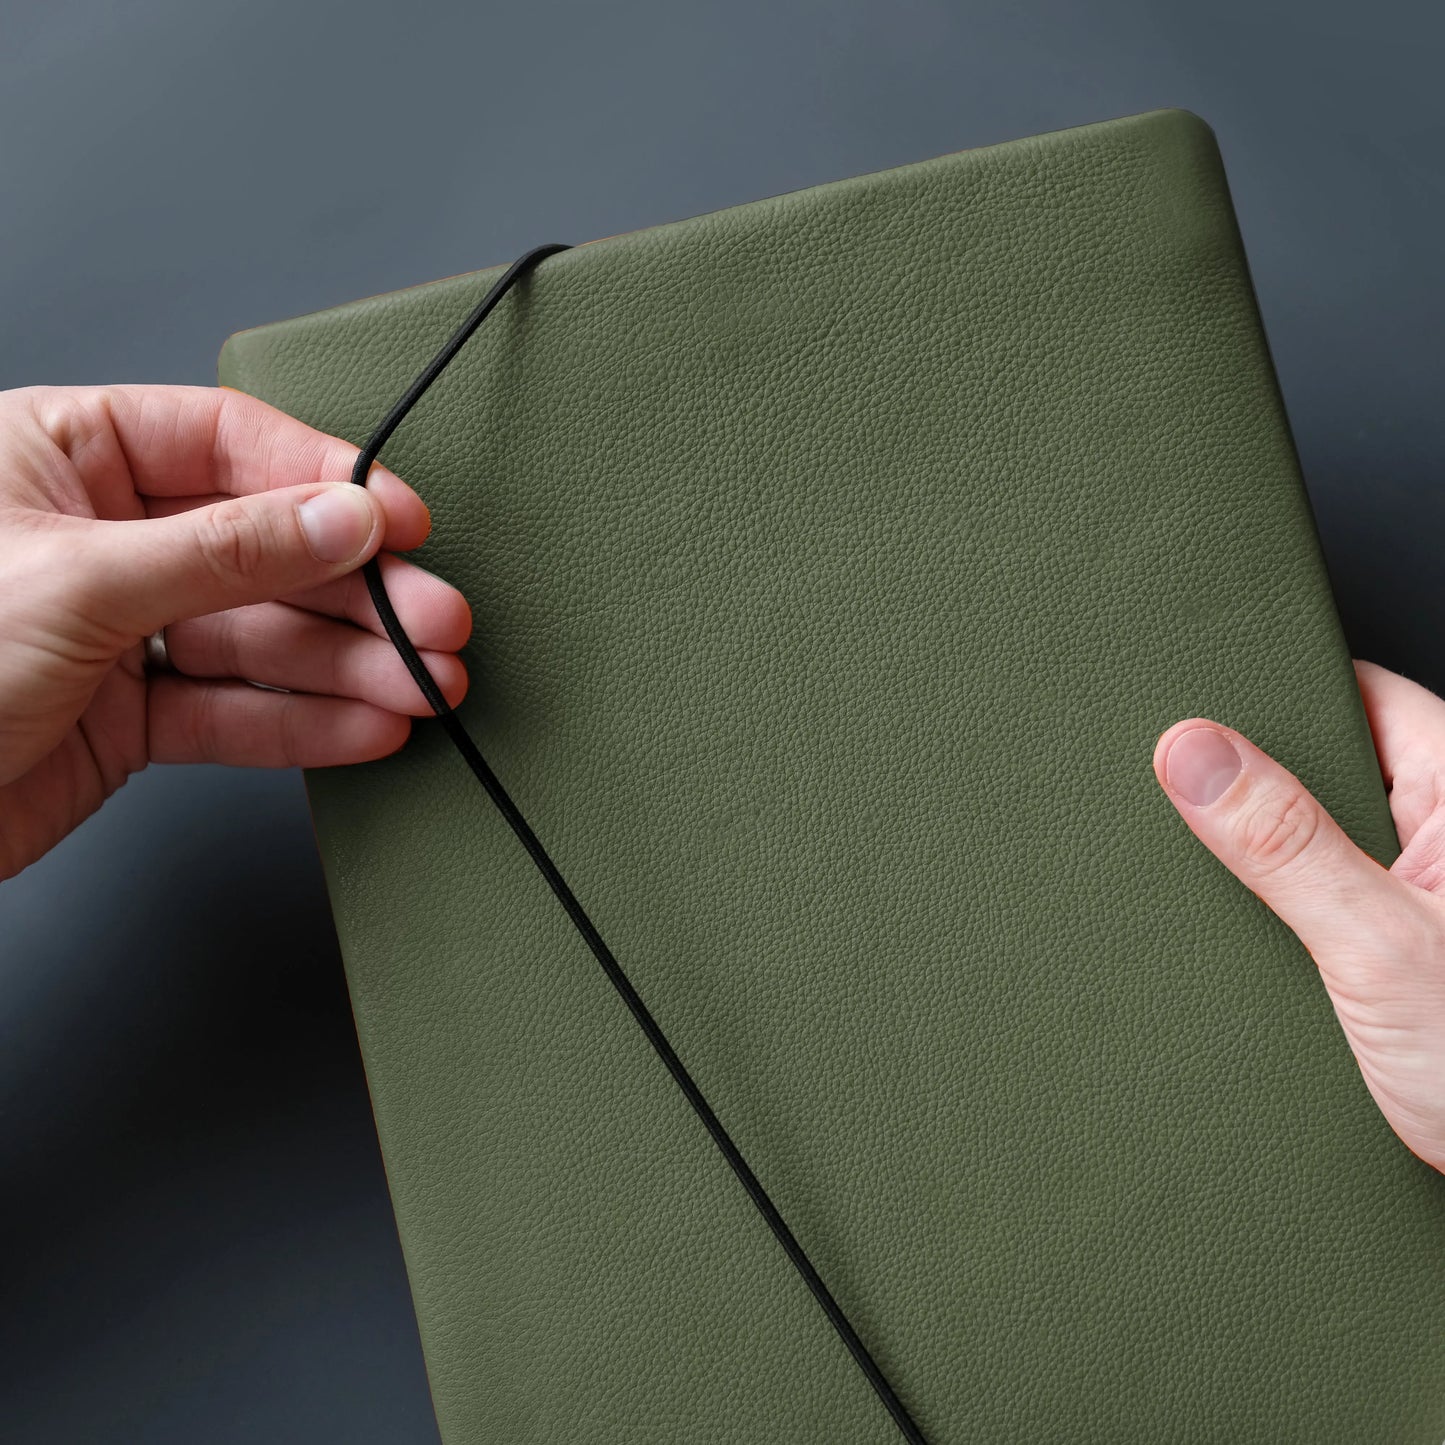 iPadcase aus khakifarbenem Leder, das von zwei Händen mit dem Verschussgummi geschlossen wird.